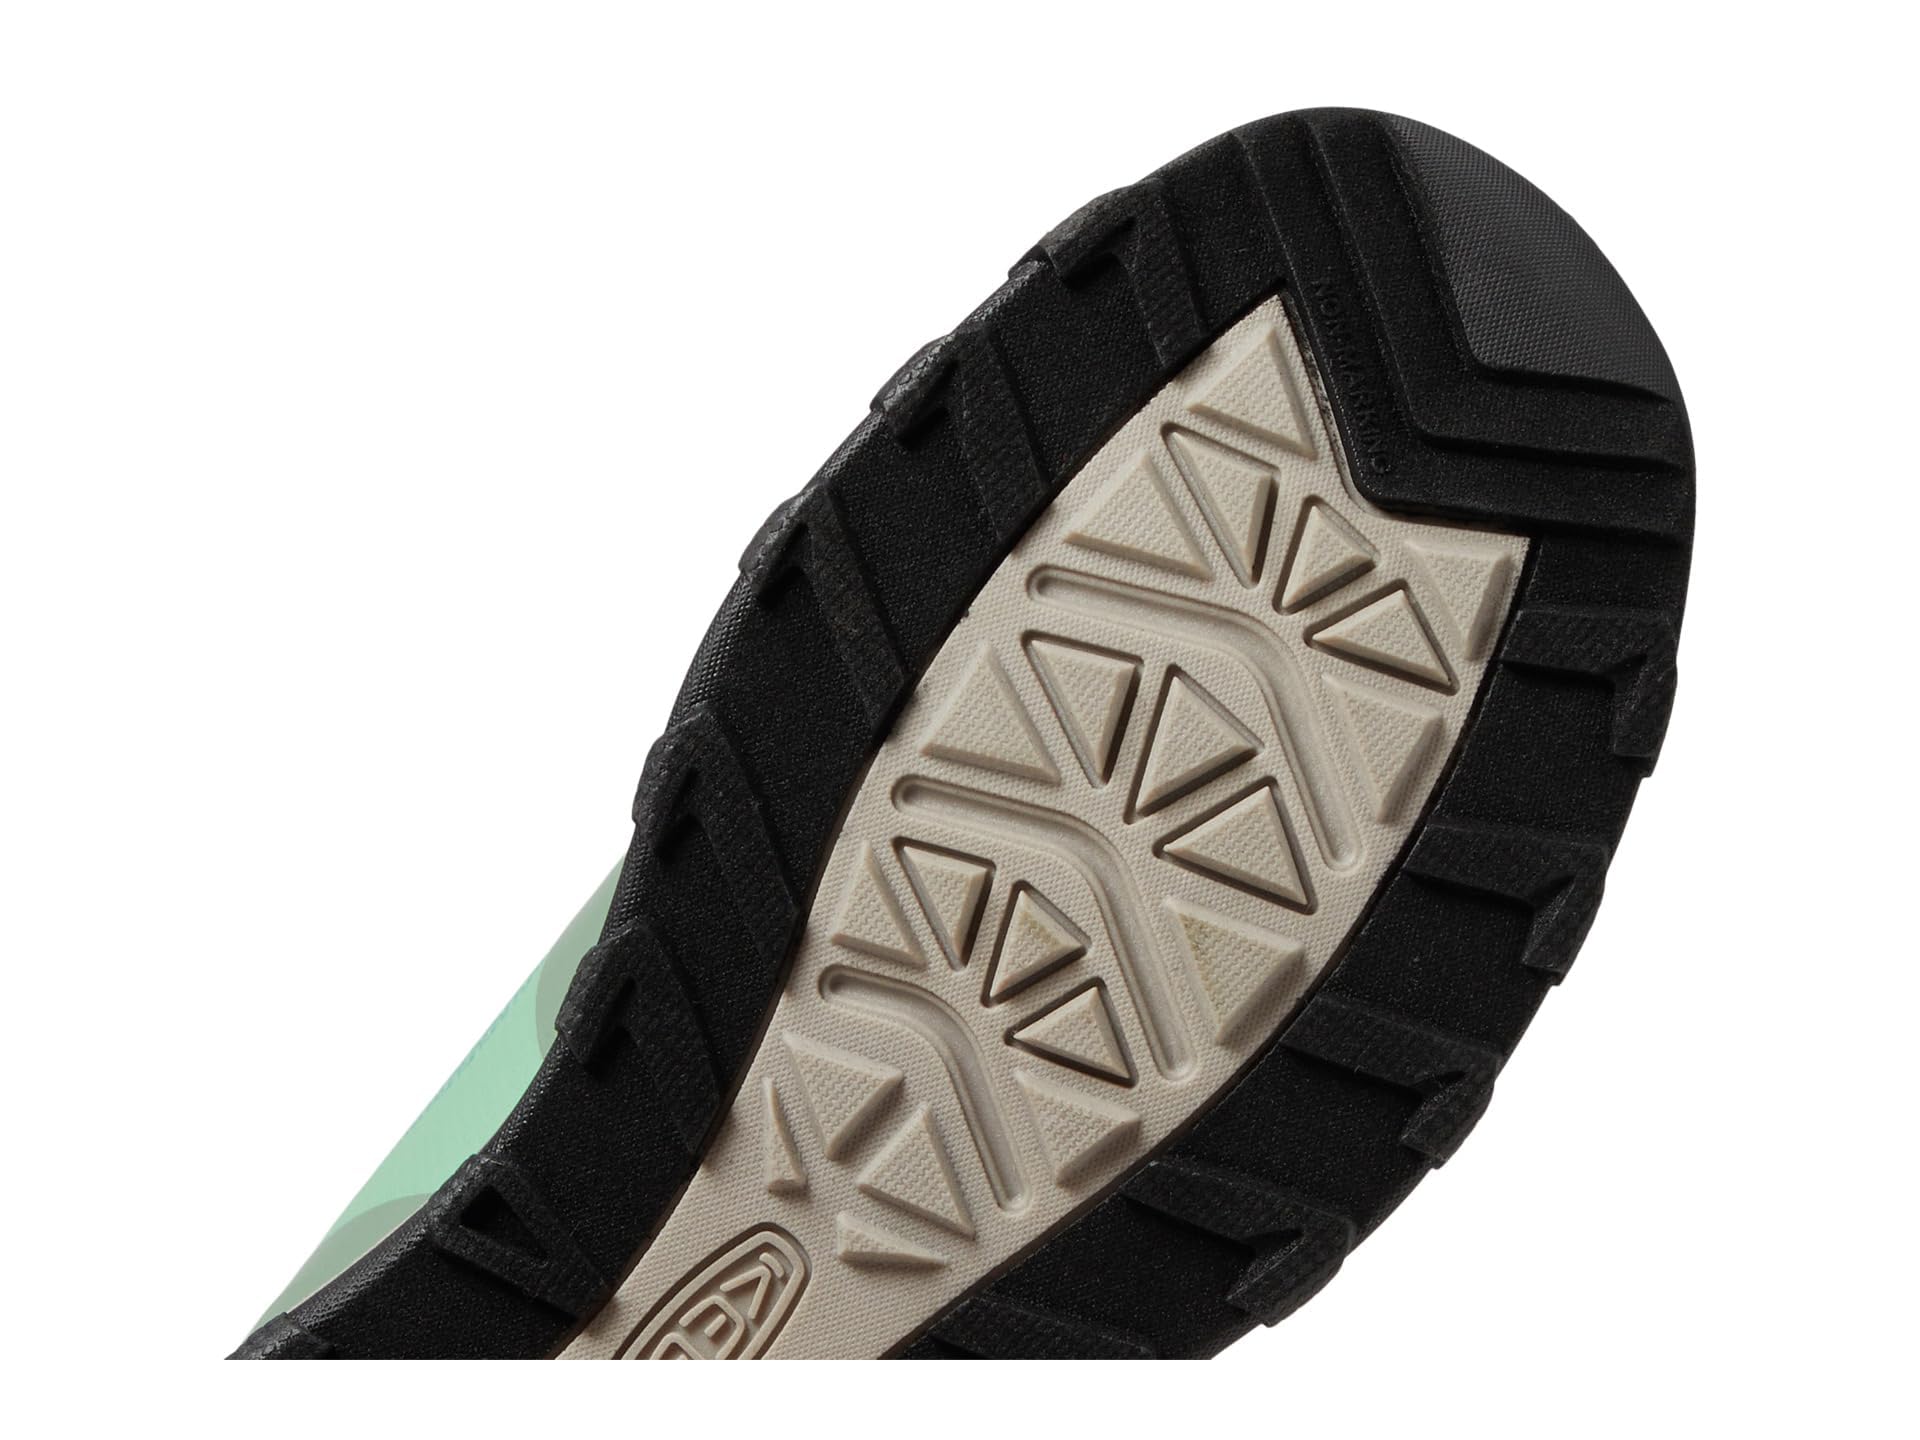 KEEN Wanduro Mid Height Waterproof Easy On Durable Sneaker Hiking Boots, Granite Green/Ibis Rose, 2 US Unisex Big Kid